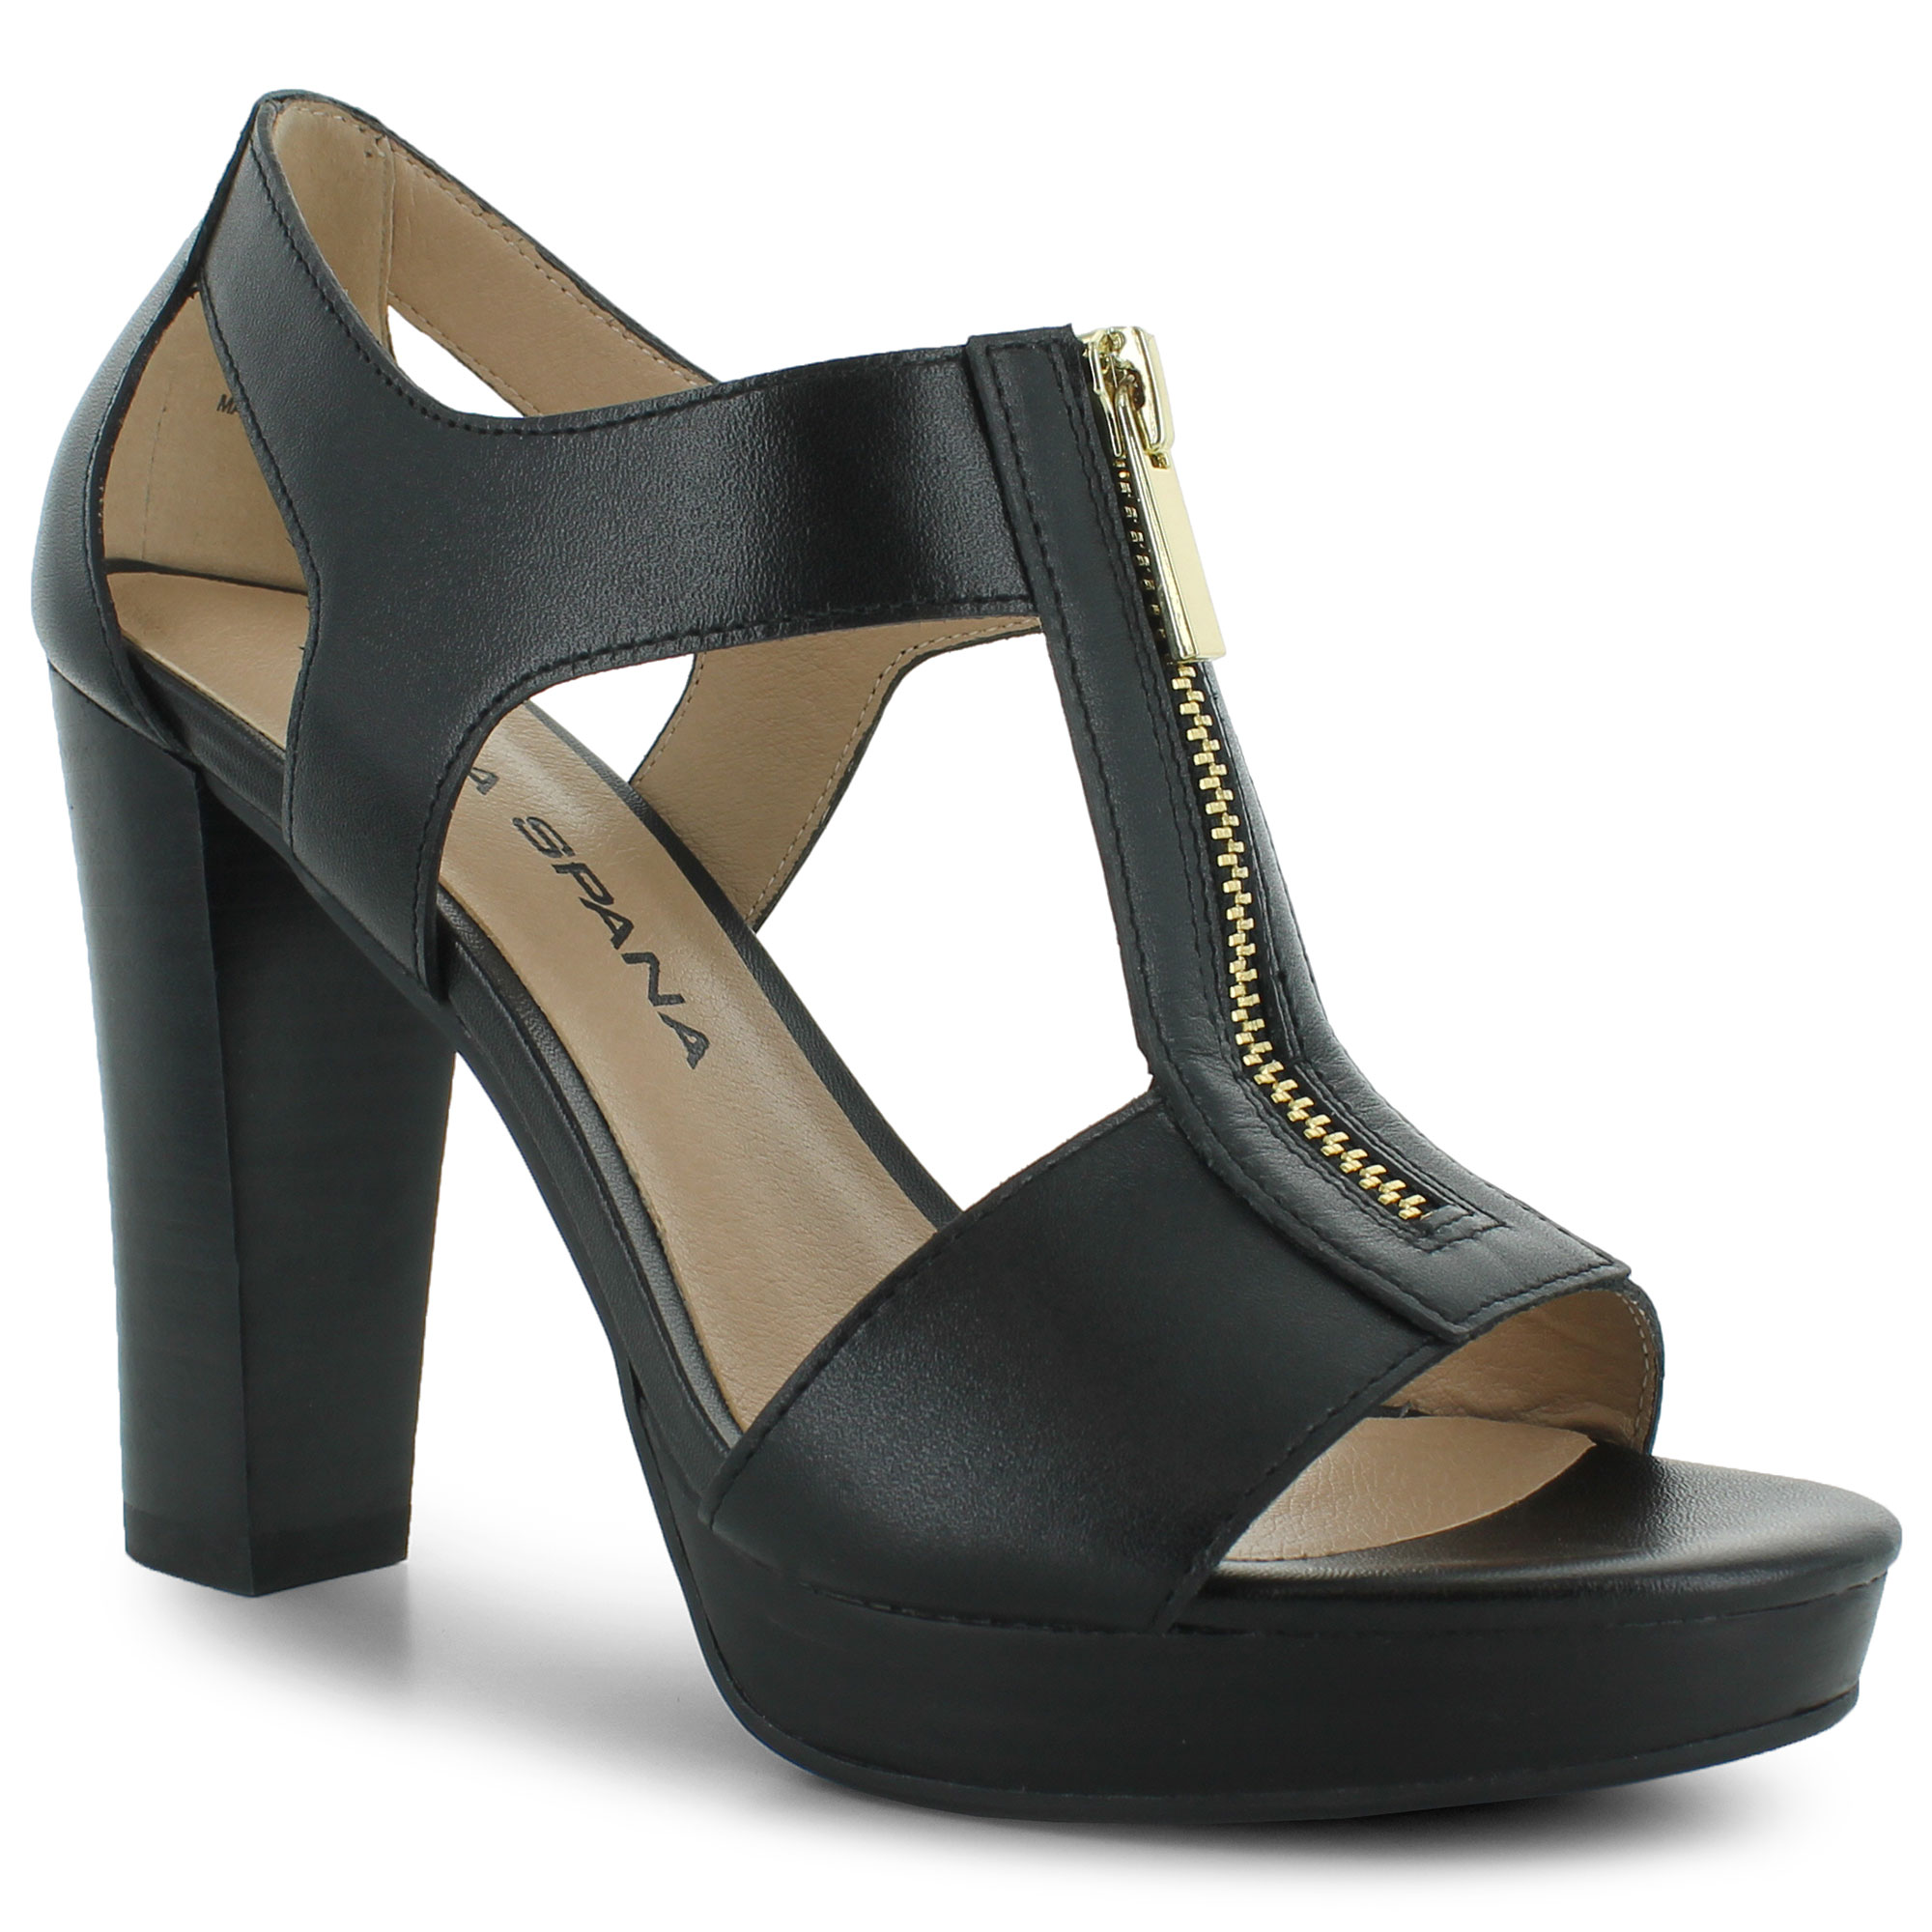 moda spana shoes website